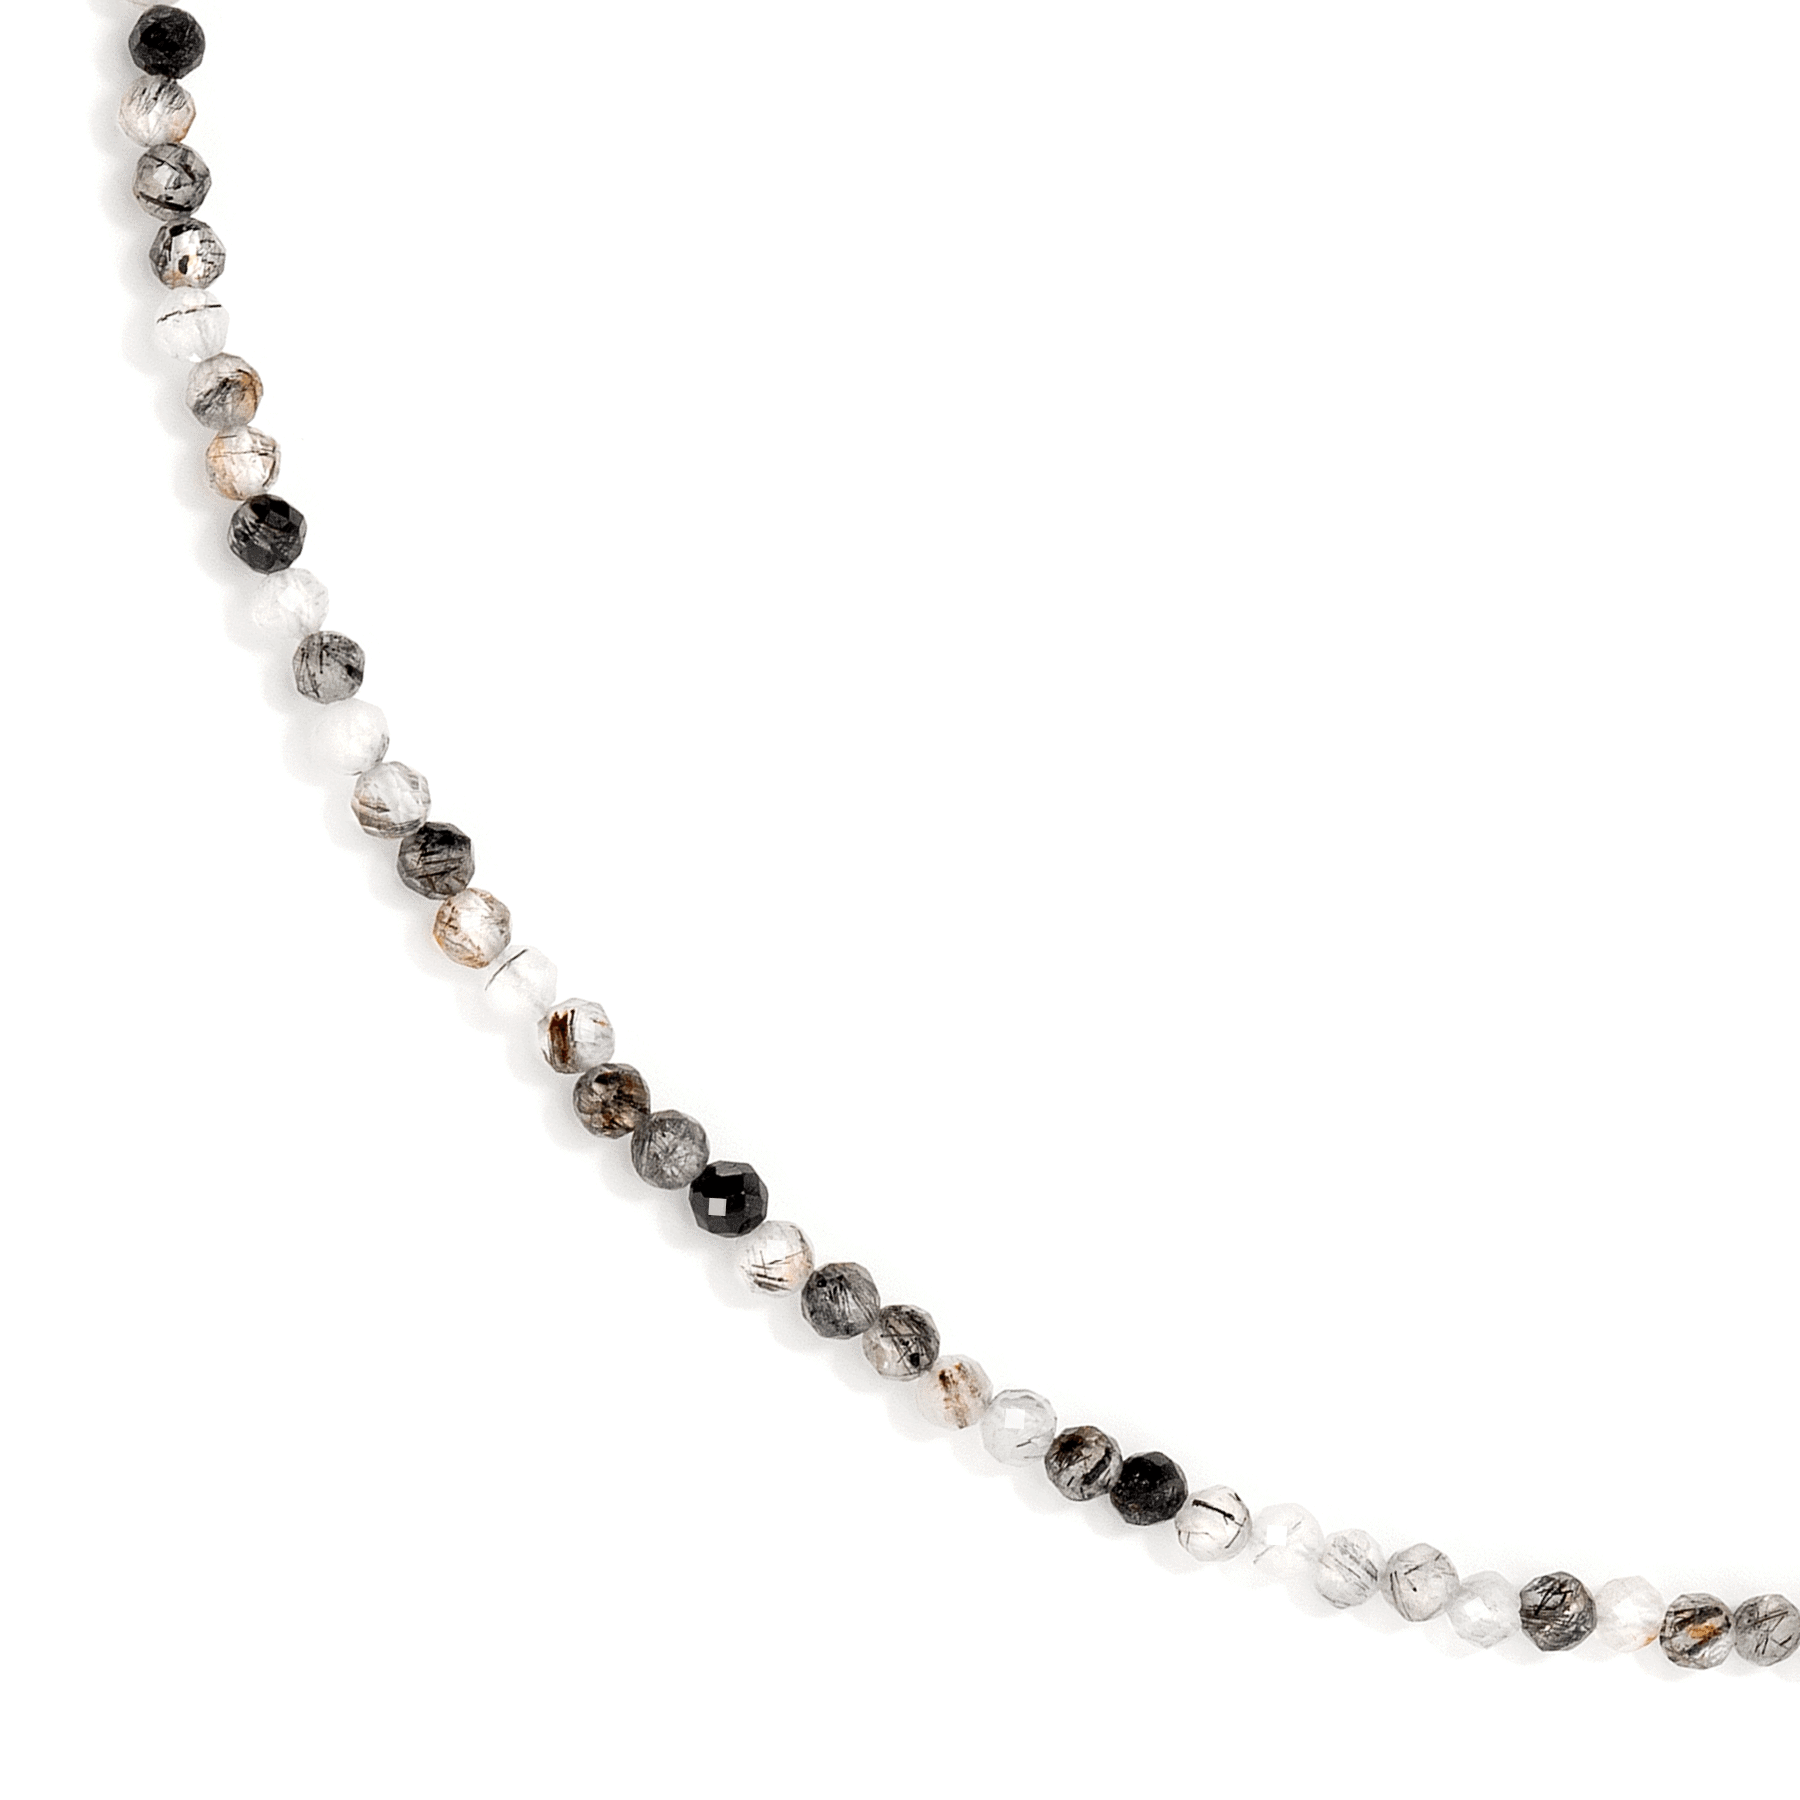 Close up of a rutile quartz stone necklace